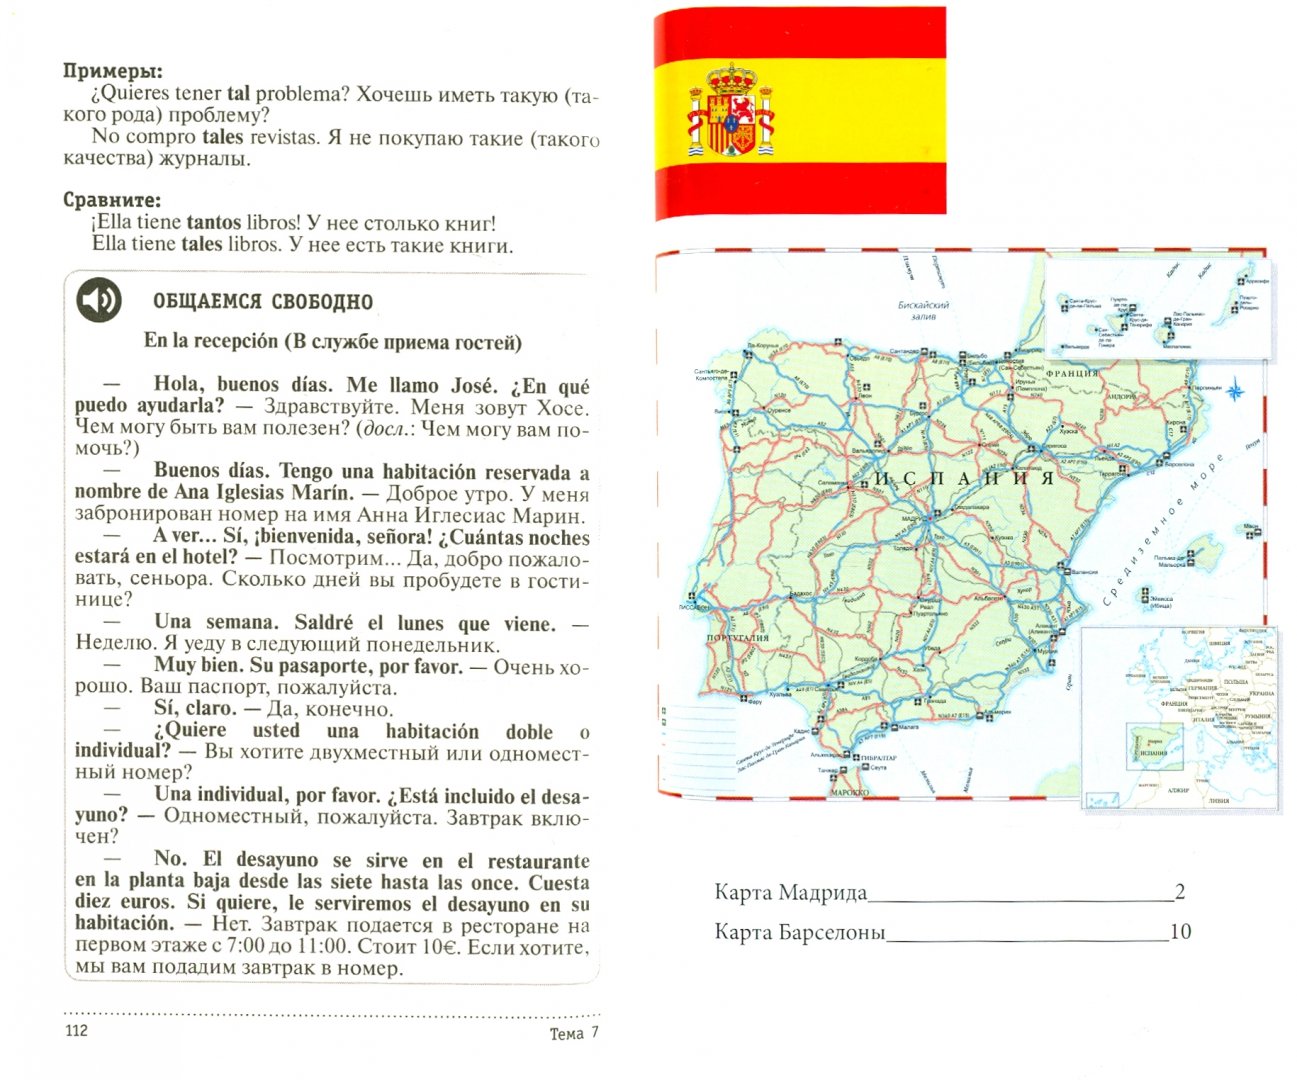 Иллюстрация 1 из 9 для Испанский для загранпоездки с картами - Гонсалес, Алимова | Лабиринт - книги. Источник: Лабиринт